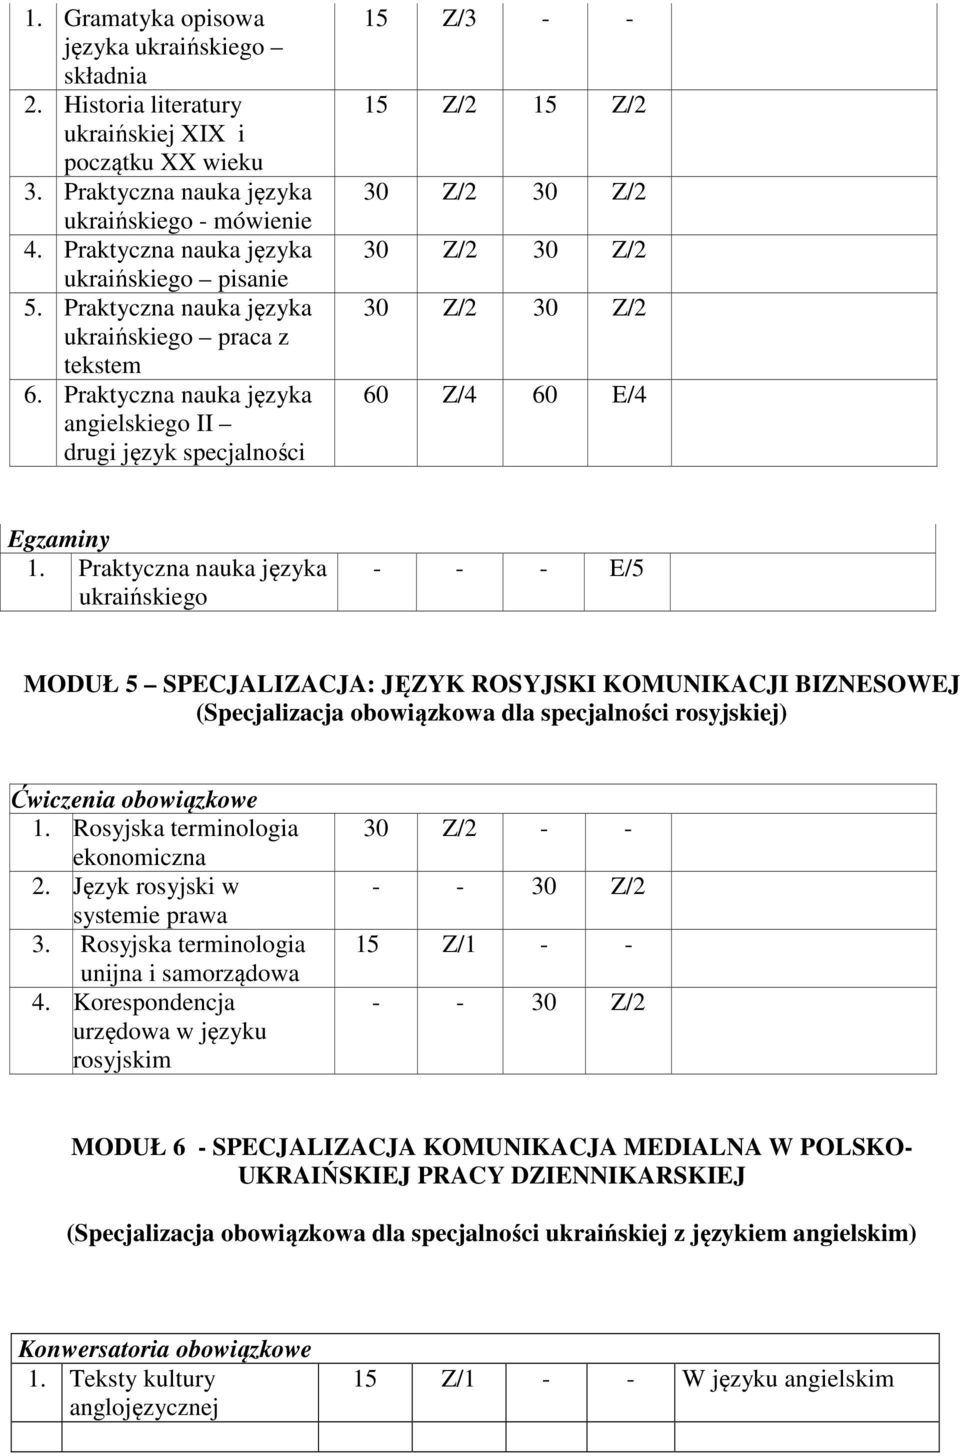 Praktyczna nauka języka ukraińskiego - - - E/5 MODUŁ 5 SPECJALIZACJA: JĘZYK ROSYJSKI KOMUNIKACJI BIZNESOWEJ (Specjalizacja obowiązkowa dla specjalności rosyjskiej) 1.